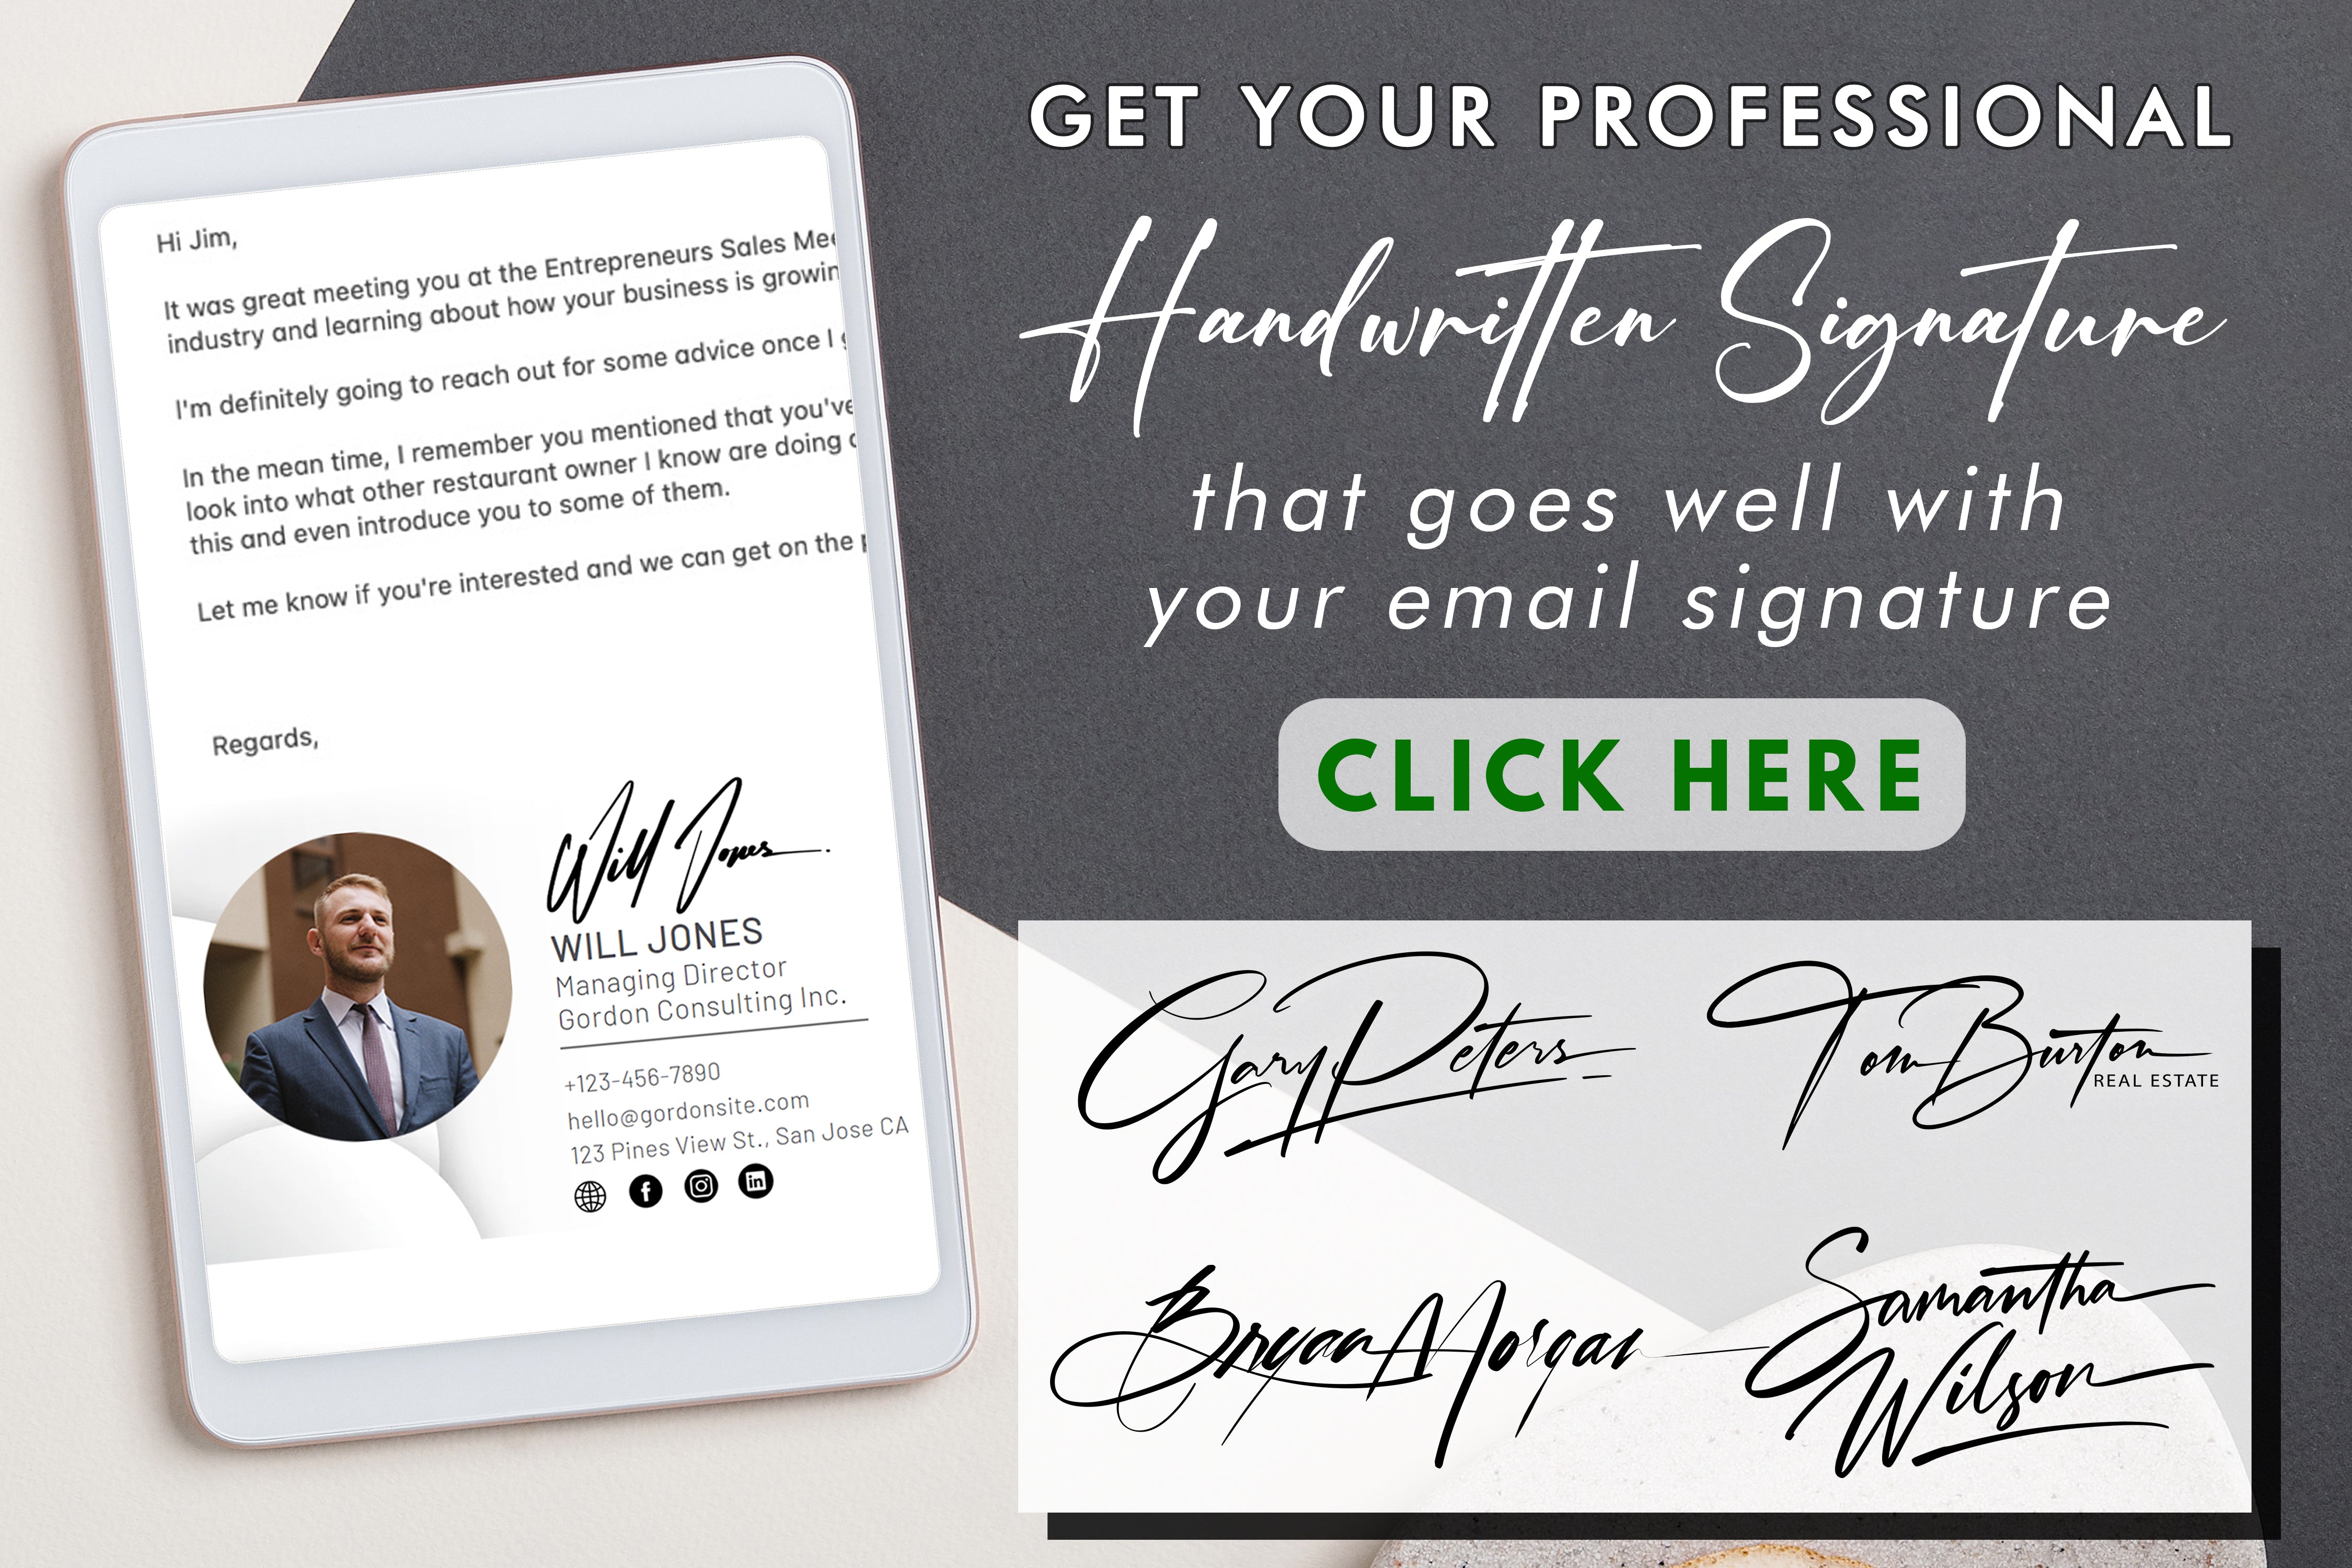 署名ブロックを最大限に活用し、効率的かつパーソナルなタッチで書類への署名体験を向上させる方法をご紹介します。